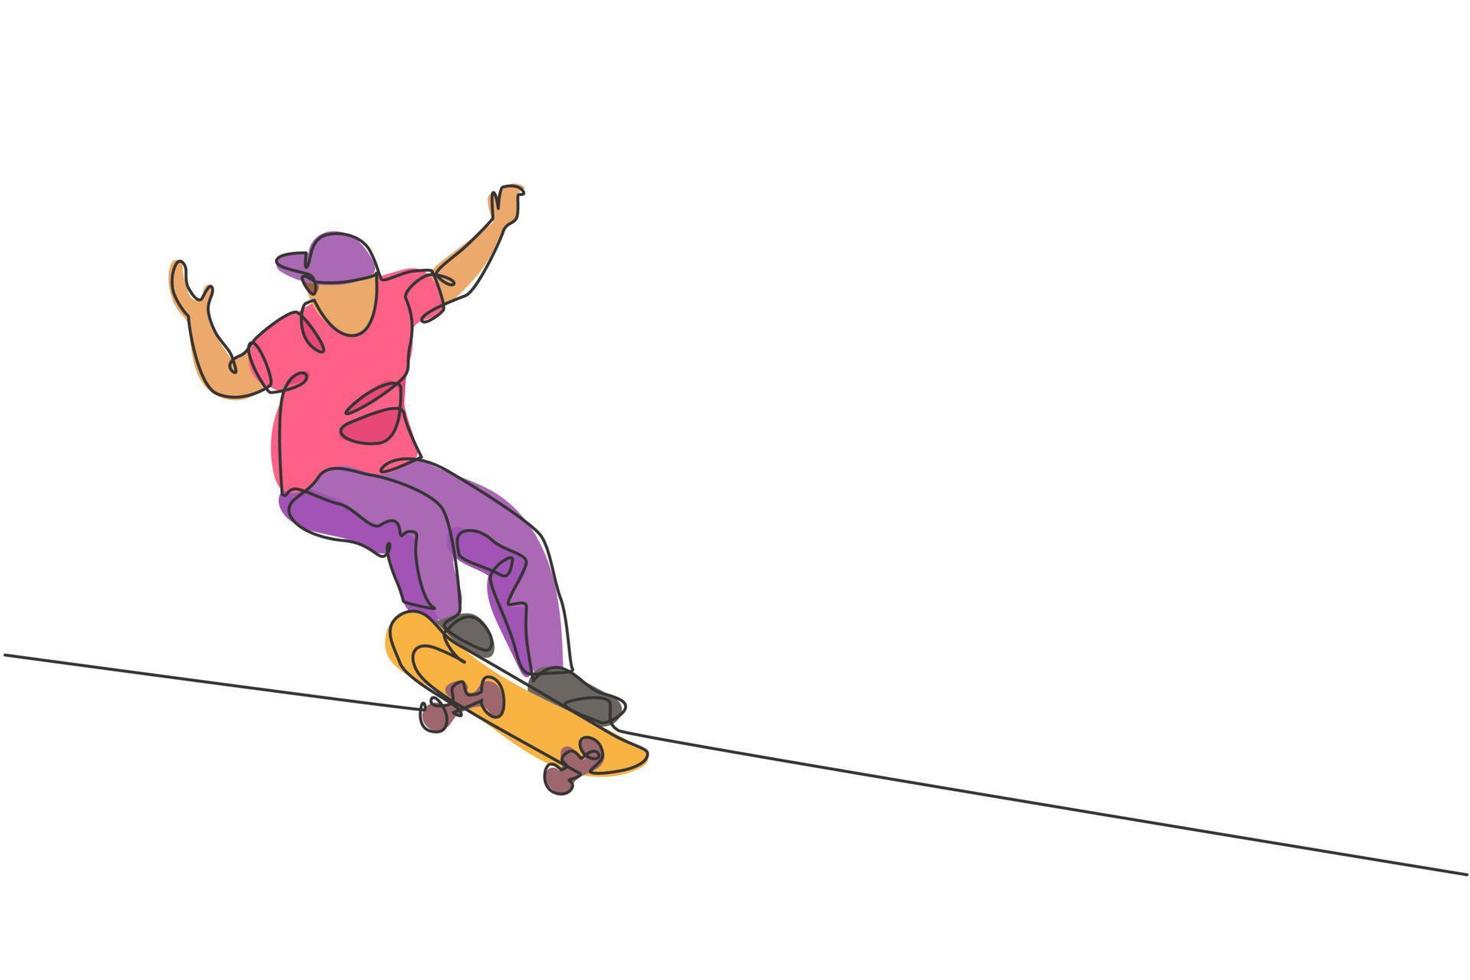 único desenho de linha contínua do jovem skatista legal andando de skate e realizando truque de salto no parque de skate. praticando o conceito de esporte ao ar livre. ilustração em vetor design de desenho de uma linha na moda